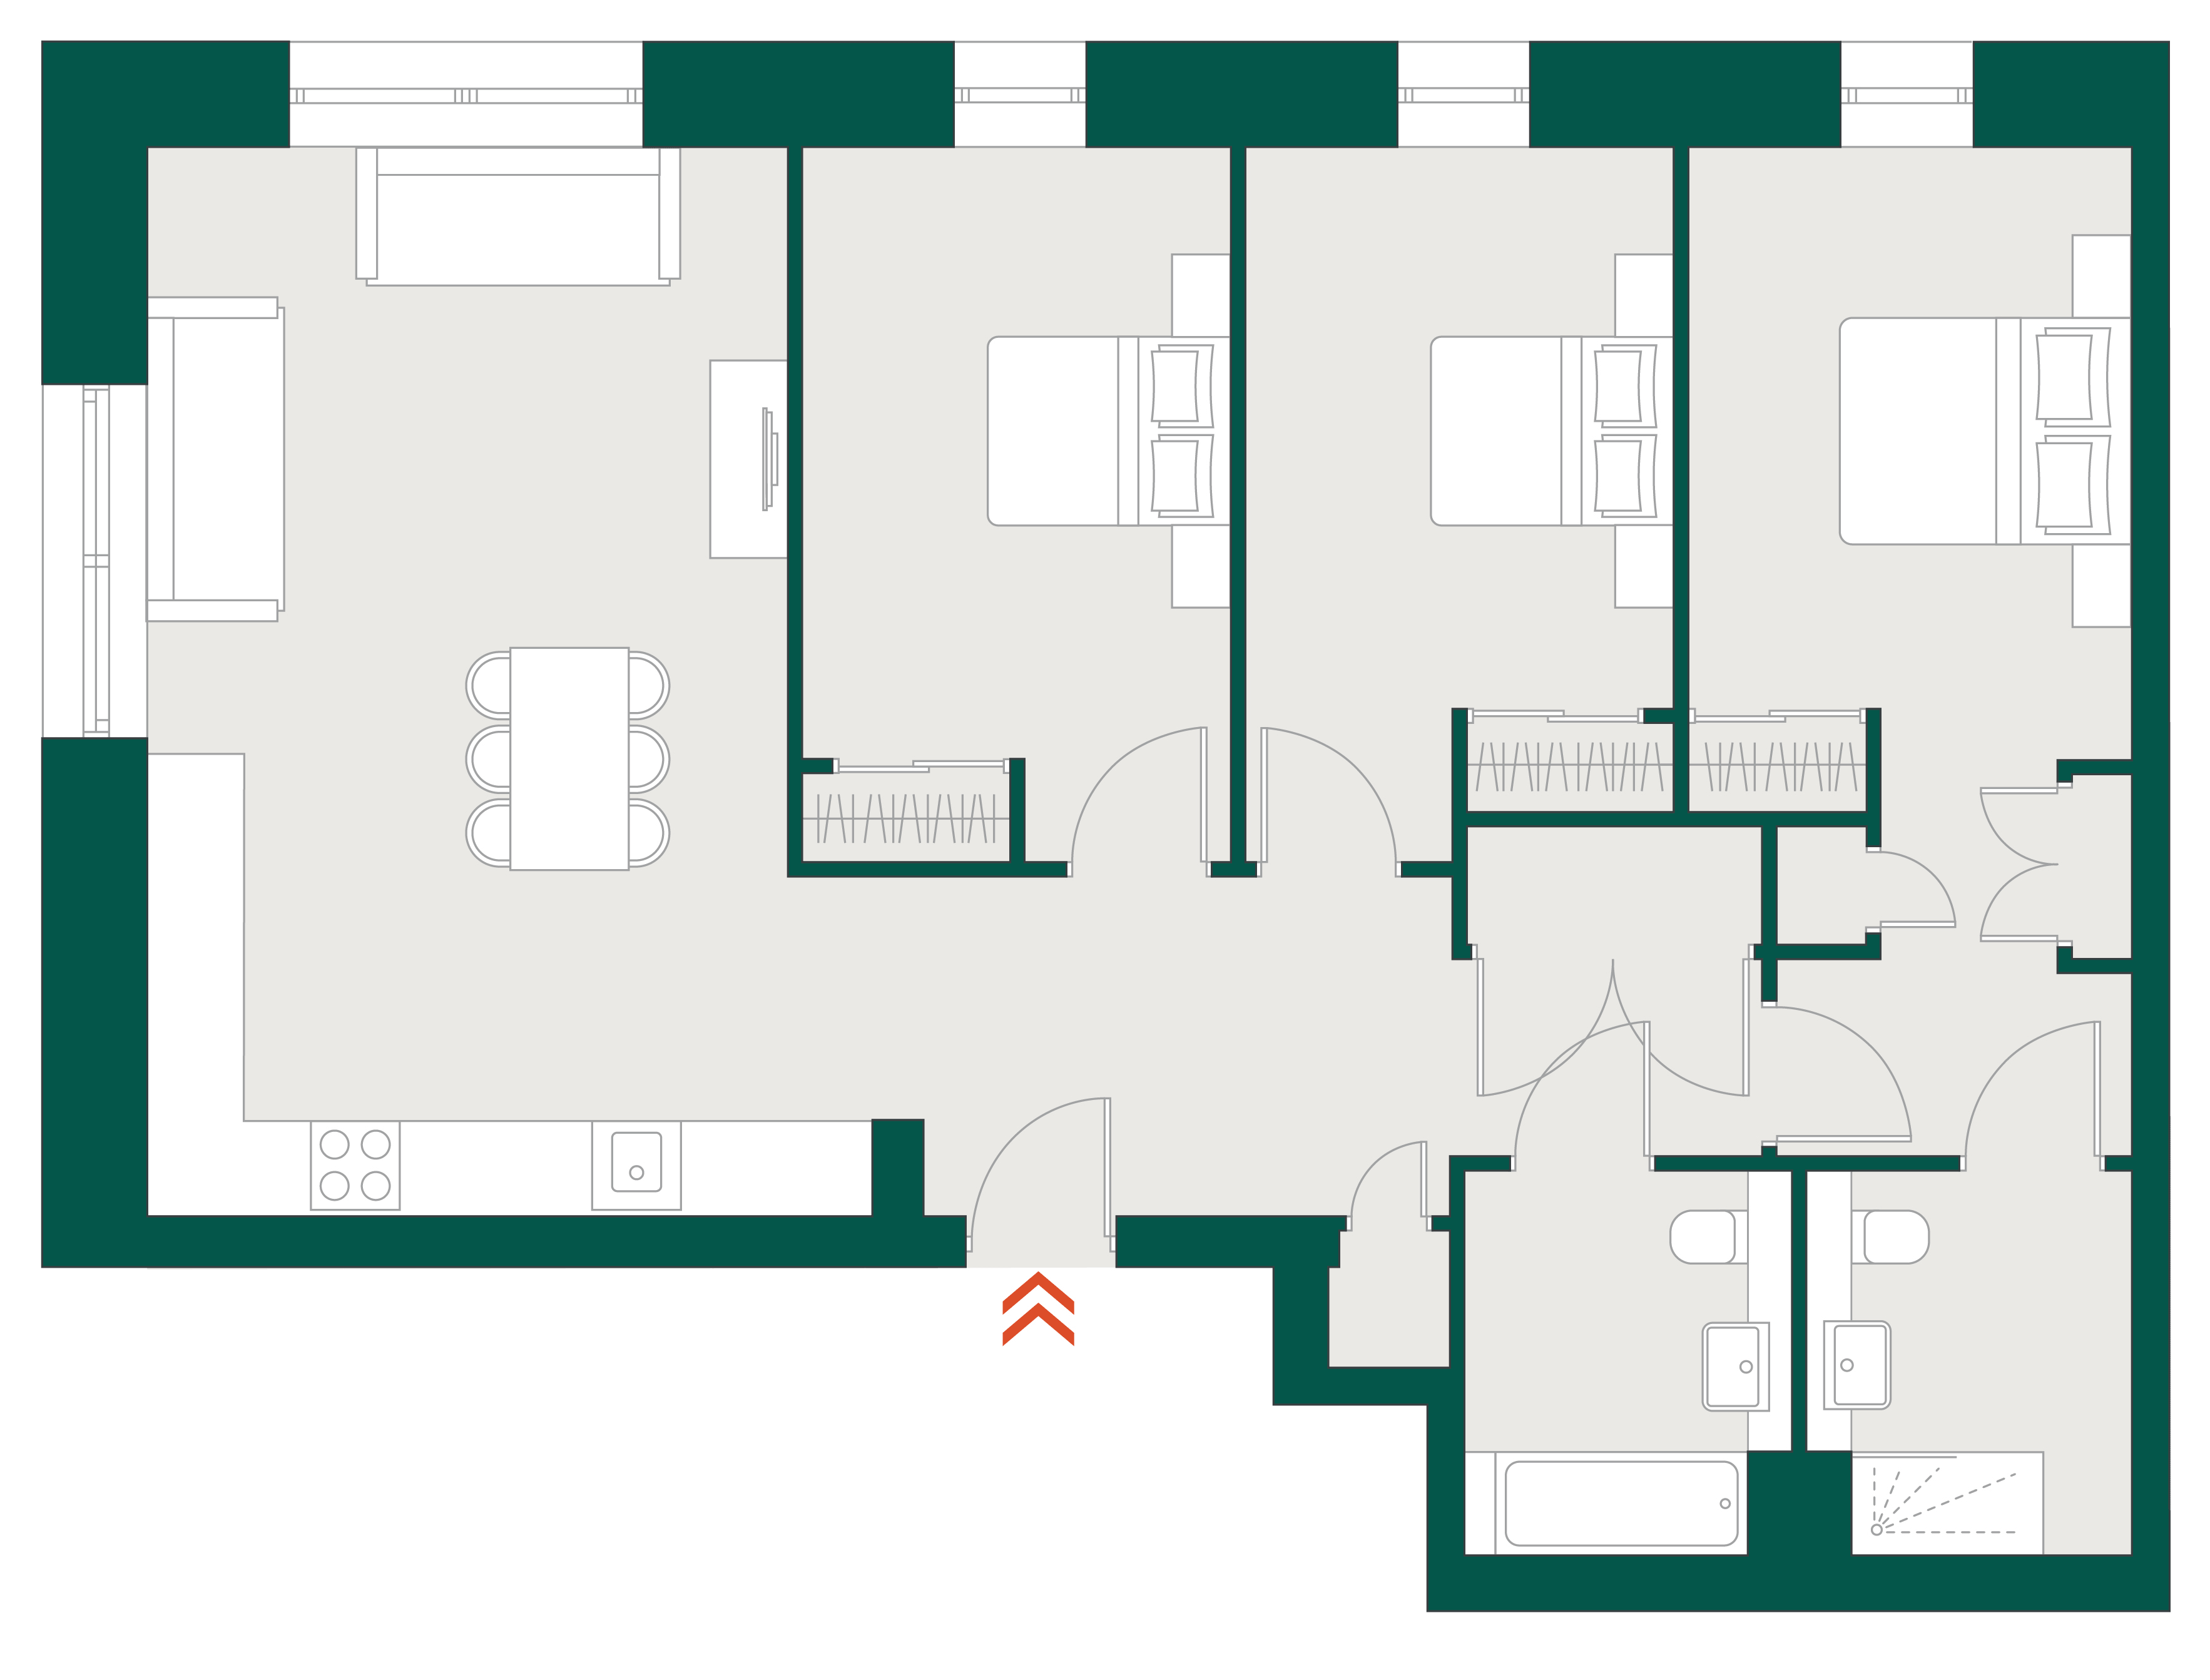 Blackhorse Mills 3 Bedroom WYG & floor plan typical floor plan